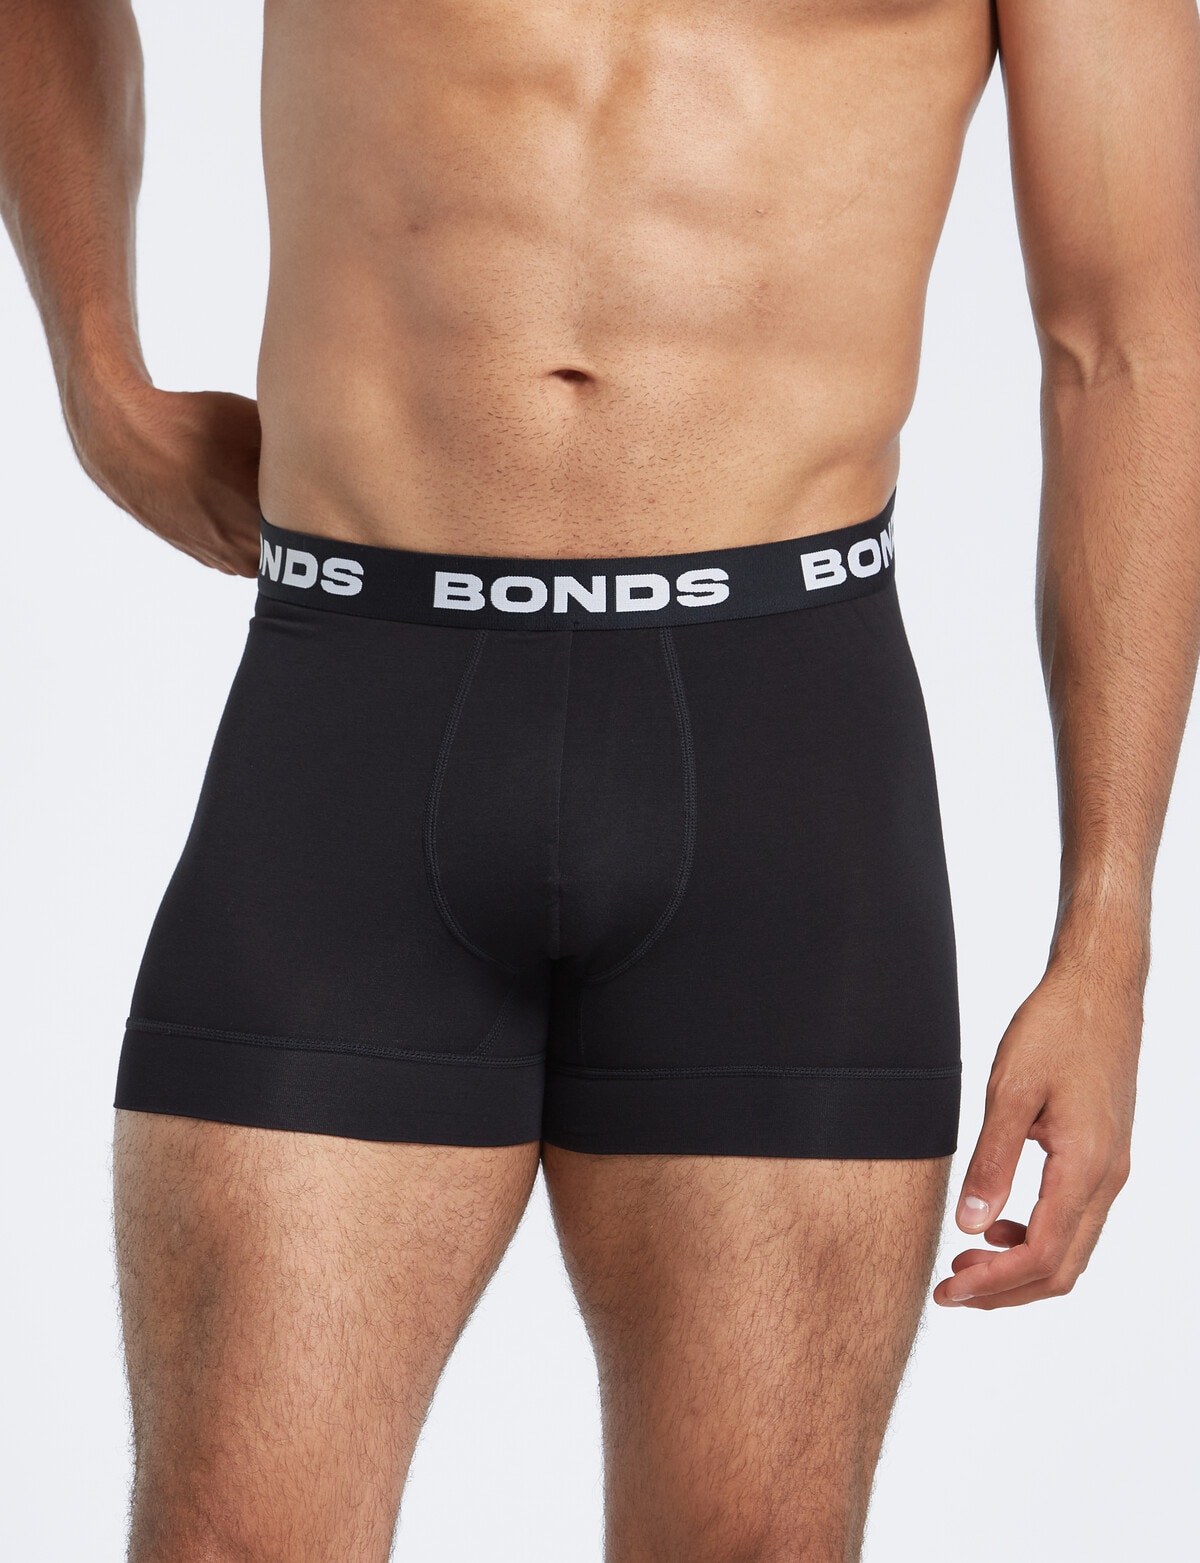 Bonds Total Package Brief, Mens Underwear